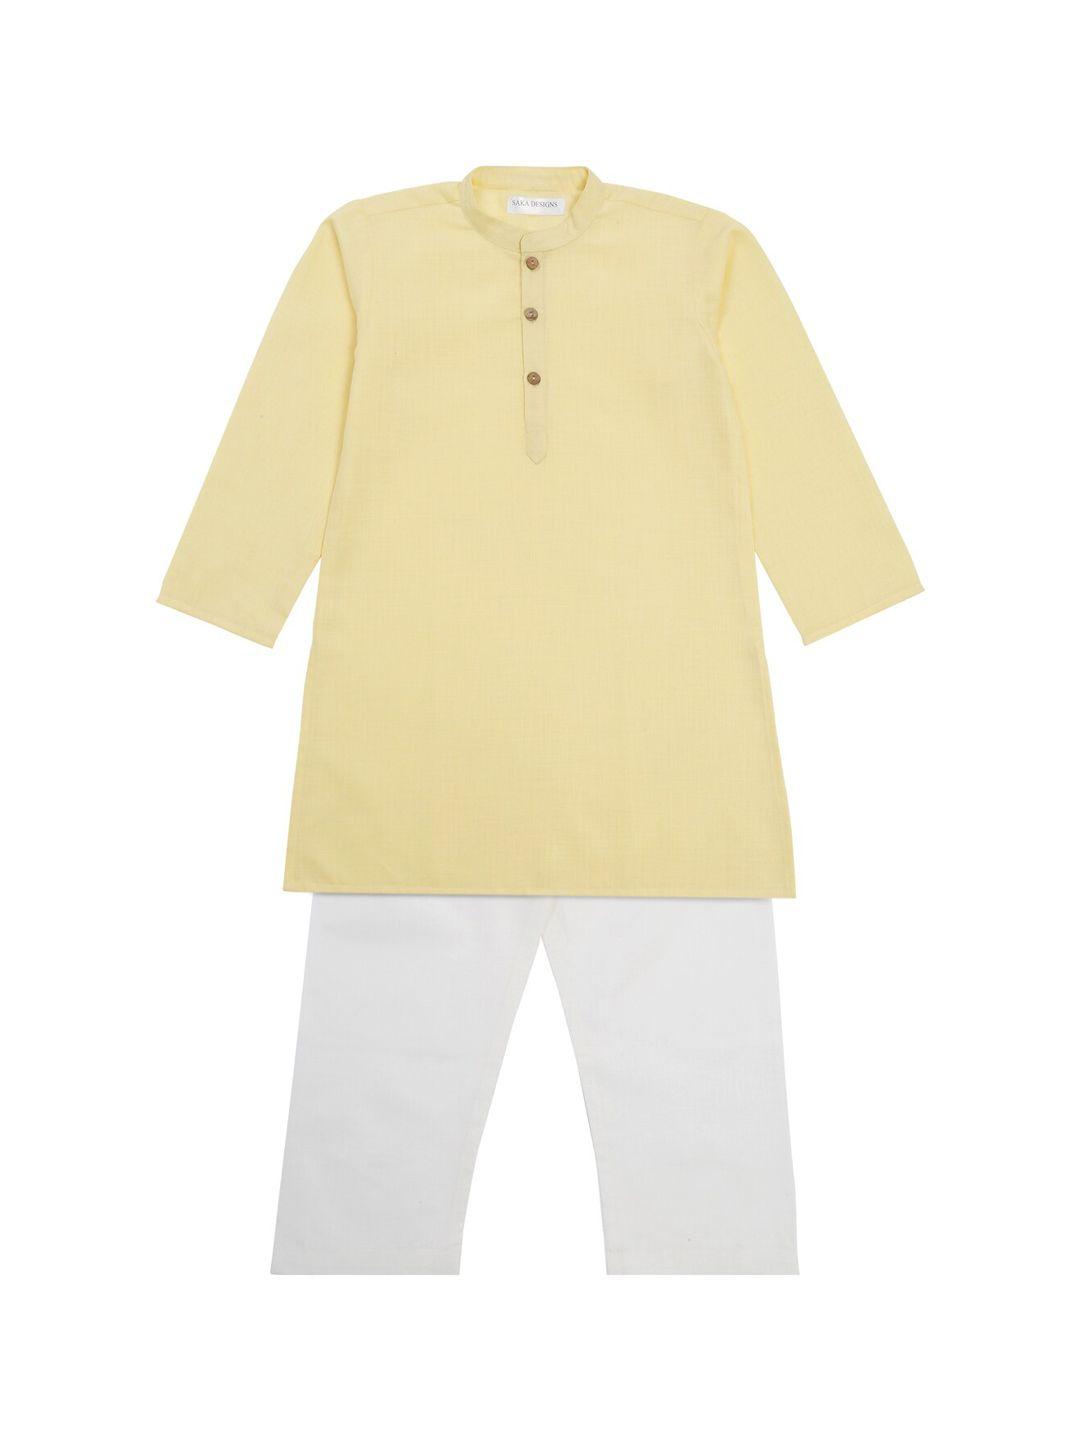 saka designs boys mandarin collar straight kurta with pyjamas